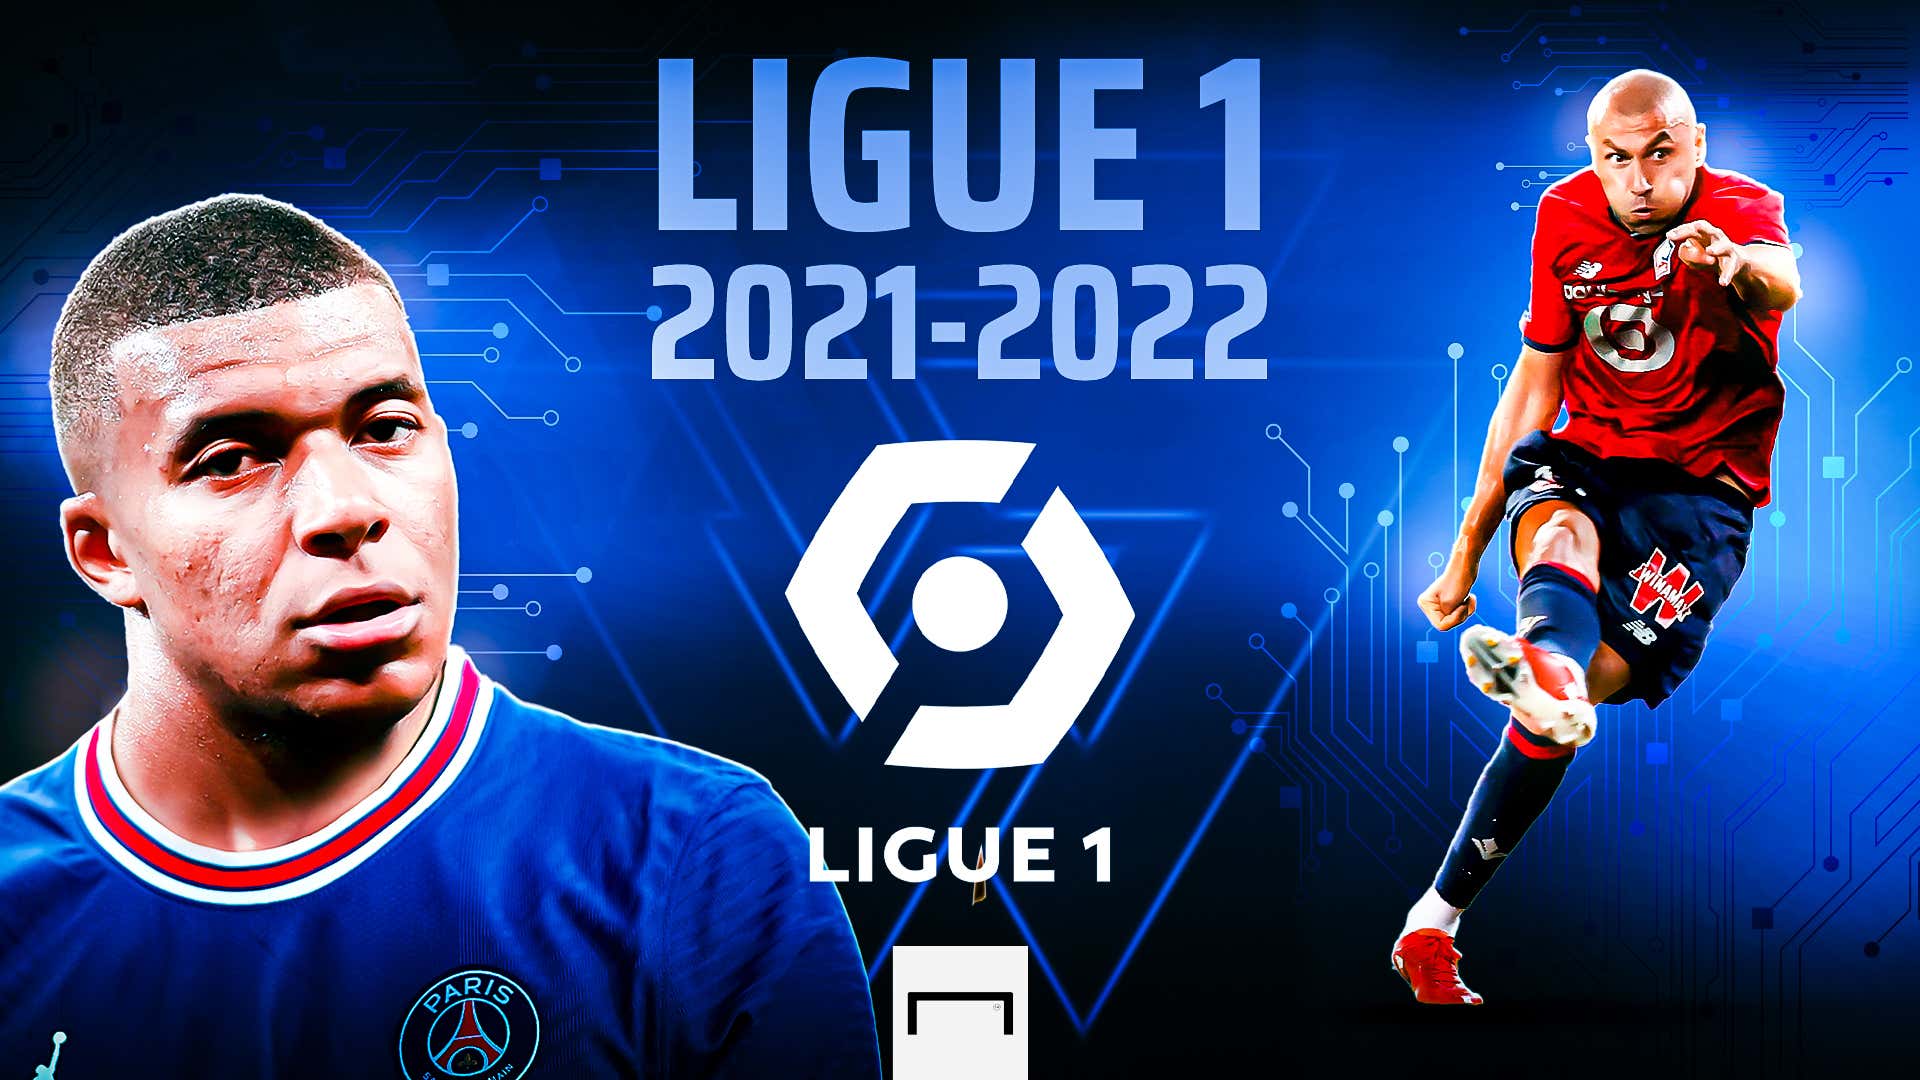 Ligue chưa thật sự là một giải đấu lớn